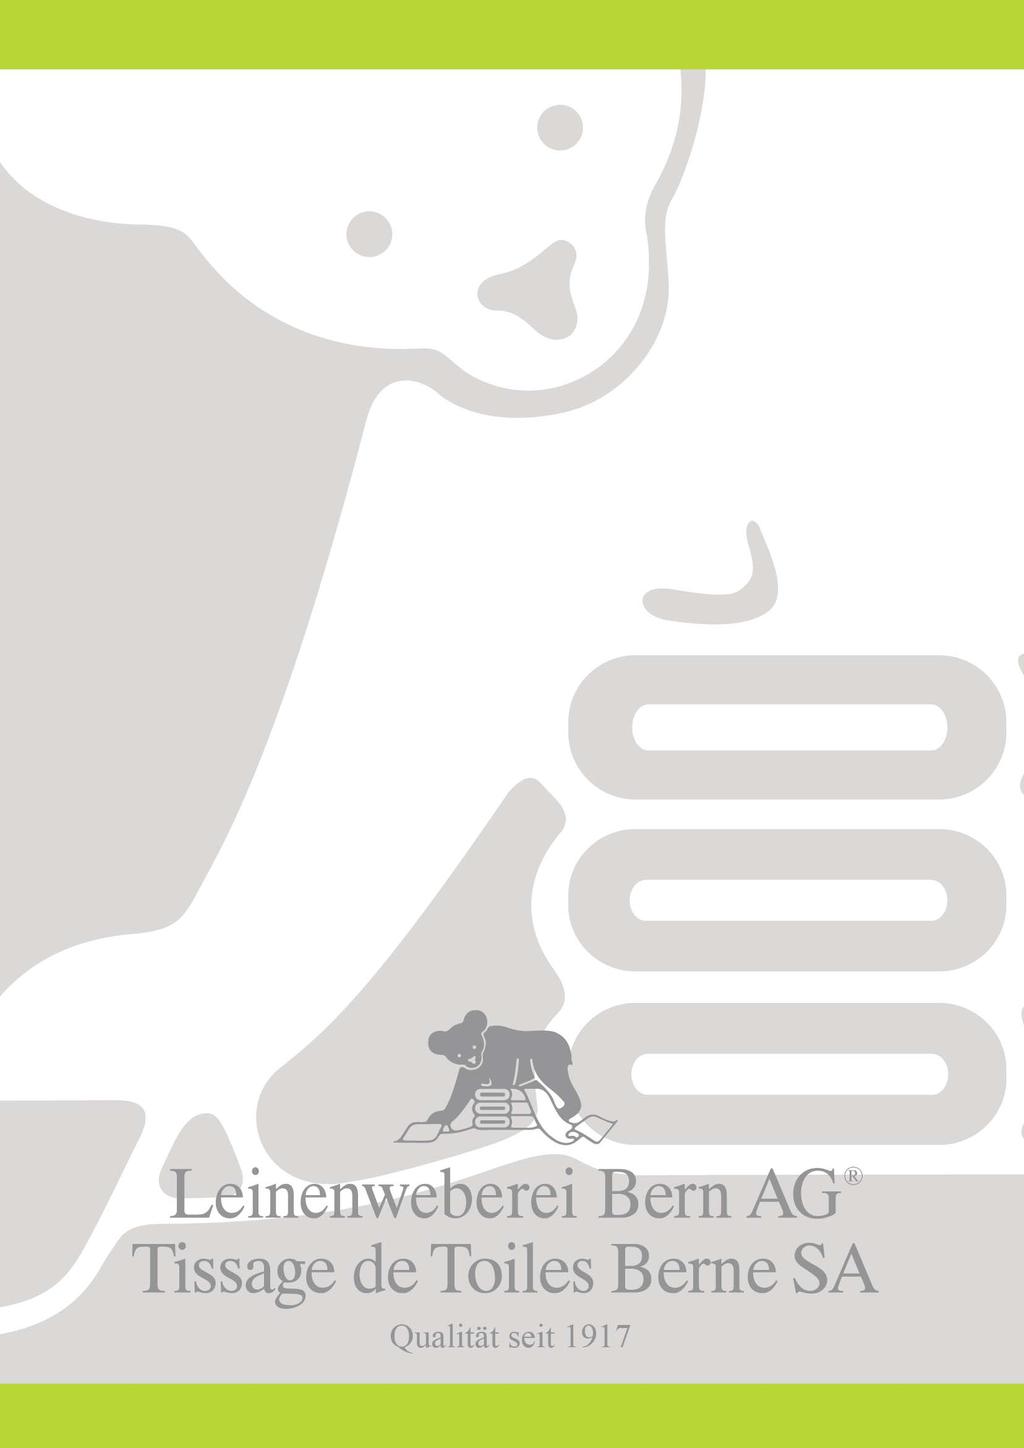 Vorgaben zur Nachhaltigkeit bei der Leinenweberei Bern AG Ein massvoller Umgang mit Ressourcen sowie ein ehrlicher und vertrauensvoller Umgang mit allen Anspruchsgruppen tragen zum langfristigen